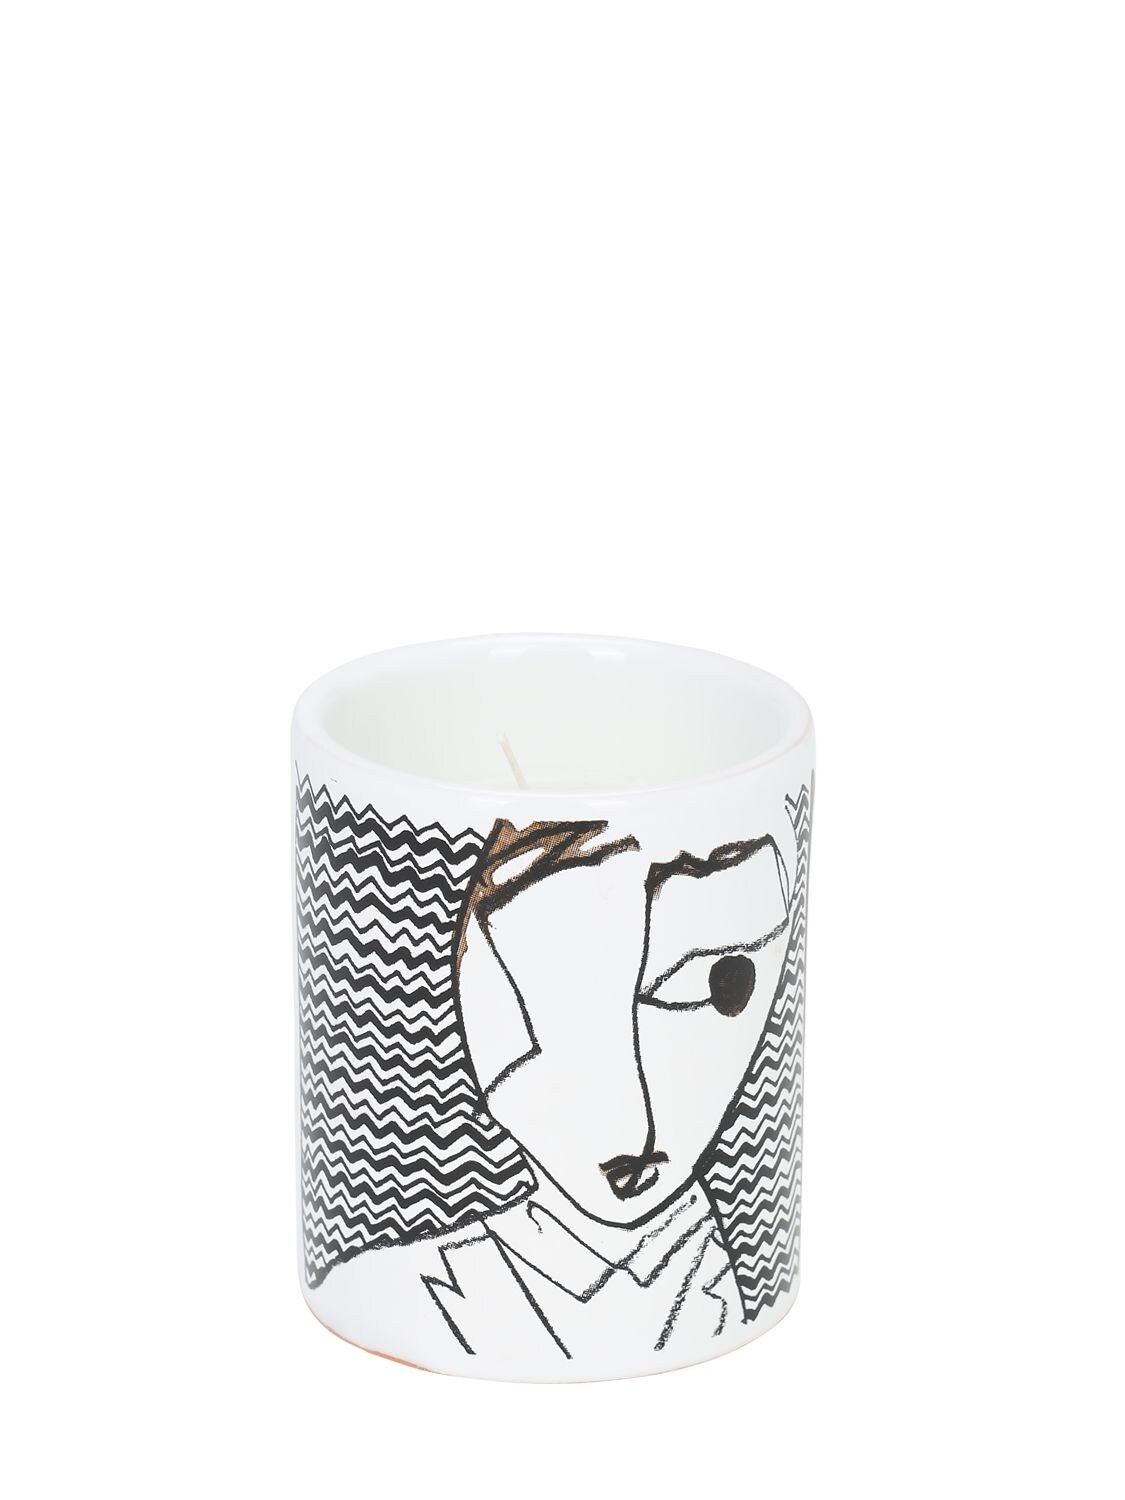 Antonio Marras Iii Ceramic Candle In White,black